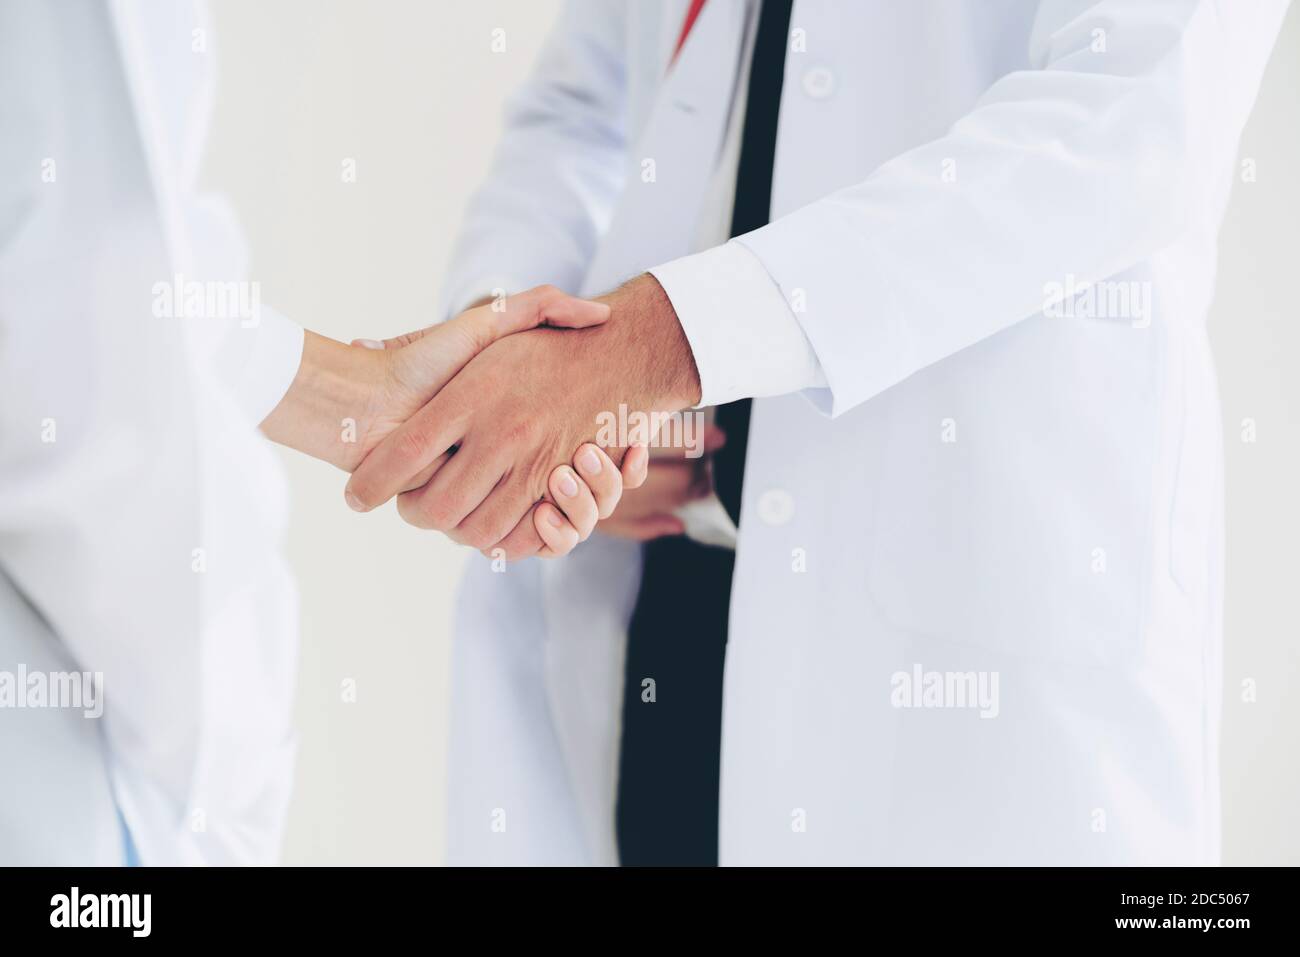 Médecin sur fond blanc donnant la poignée de main à un autre médecin montrant le succès et le travail d'équipe des professionnels de la santé. Gros plan sur les médecins Banque D'Images